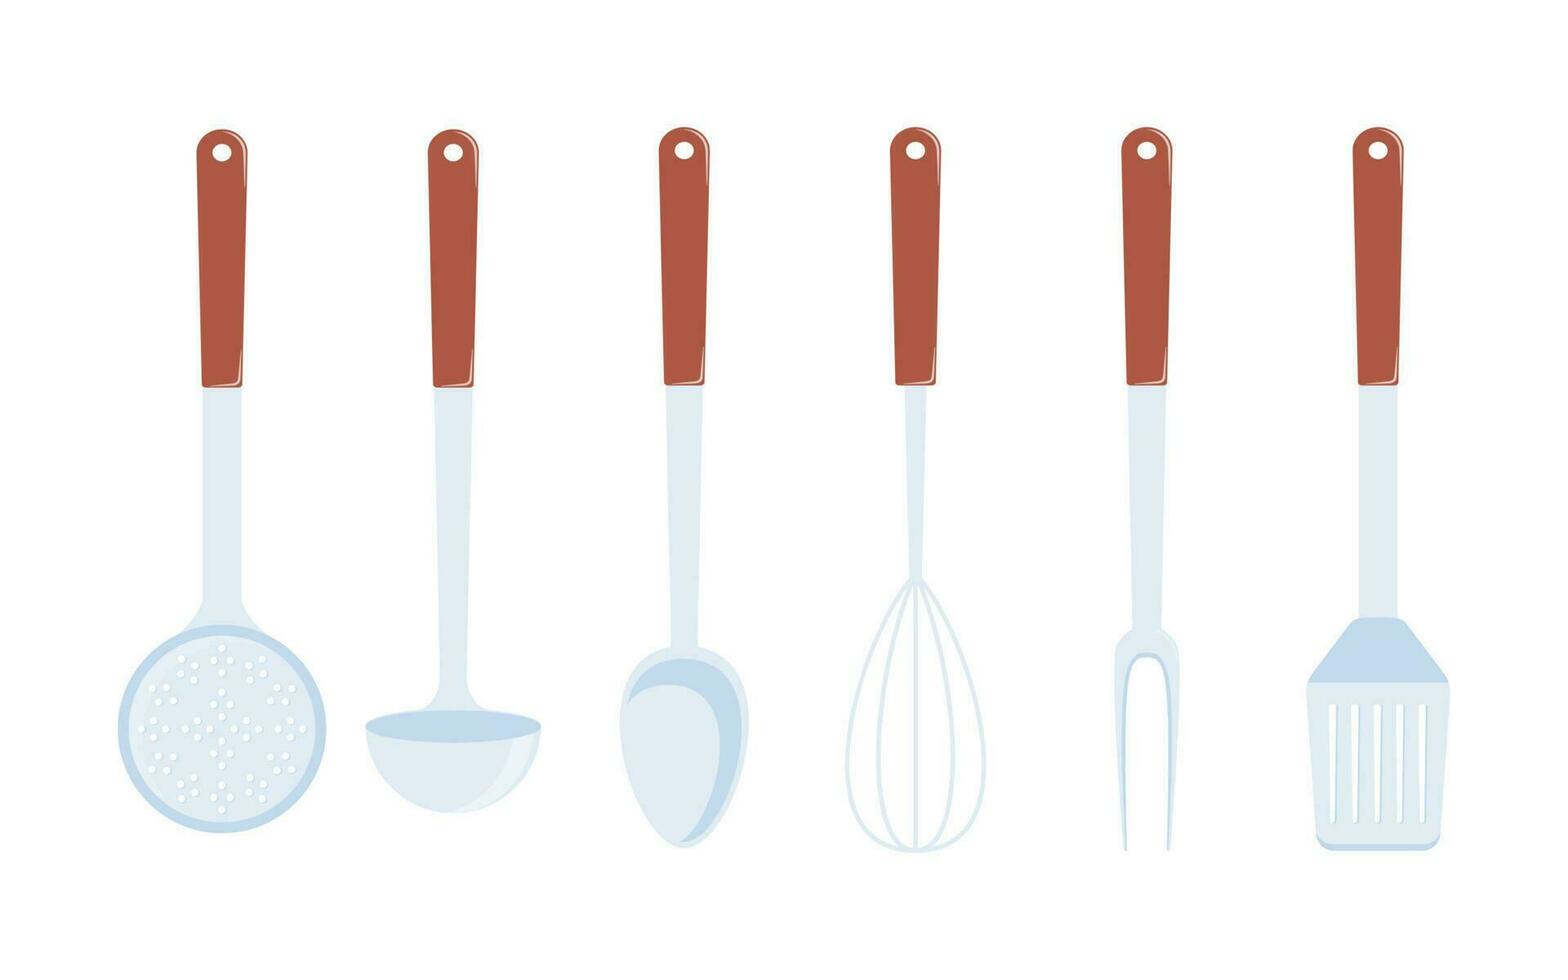 keuken gebruiksvoorwerpen, set. pollepel, spatel, garde, schuimspaan, lepel, vector illustratie geïsoleerd.